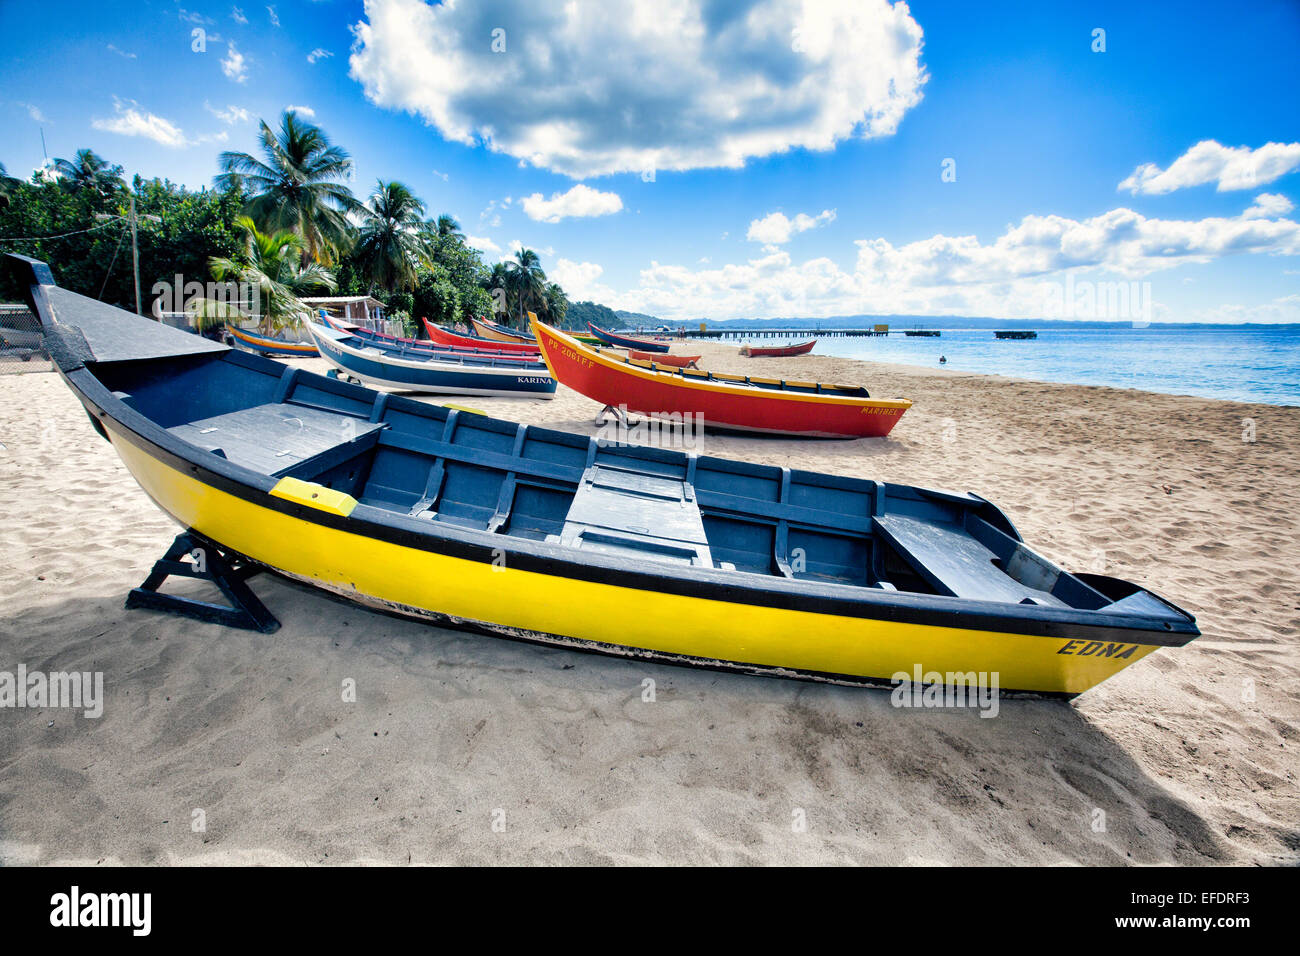 Basso angolo di visualizzazione colorata, piccole casette di legno, barche per la pesca su una spiaggia caraibica, Crashboat Beach, Aguadilla, Puerto Rico Foto Stock